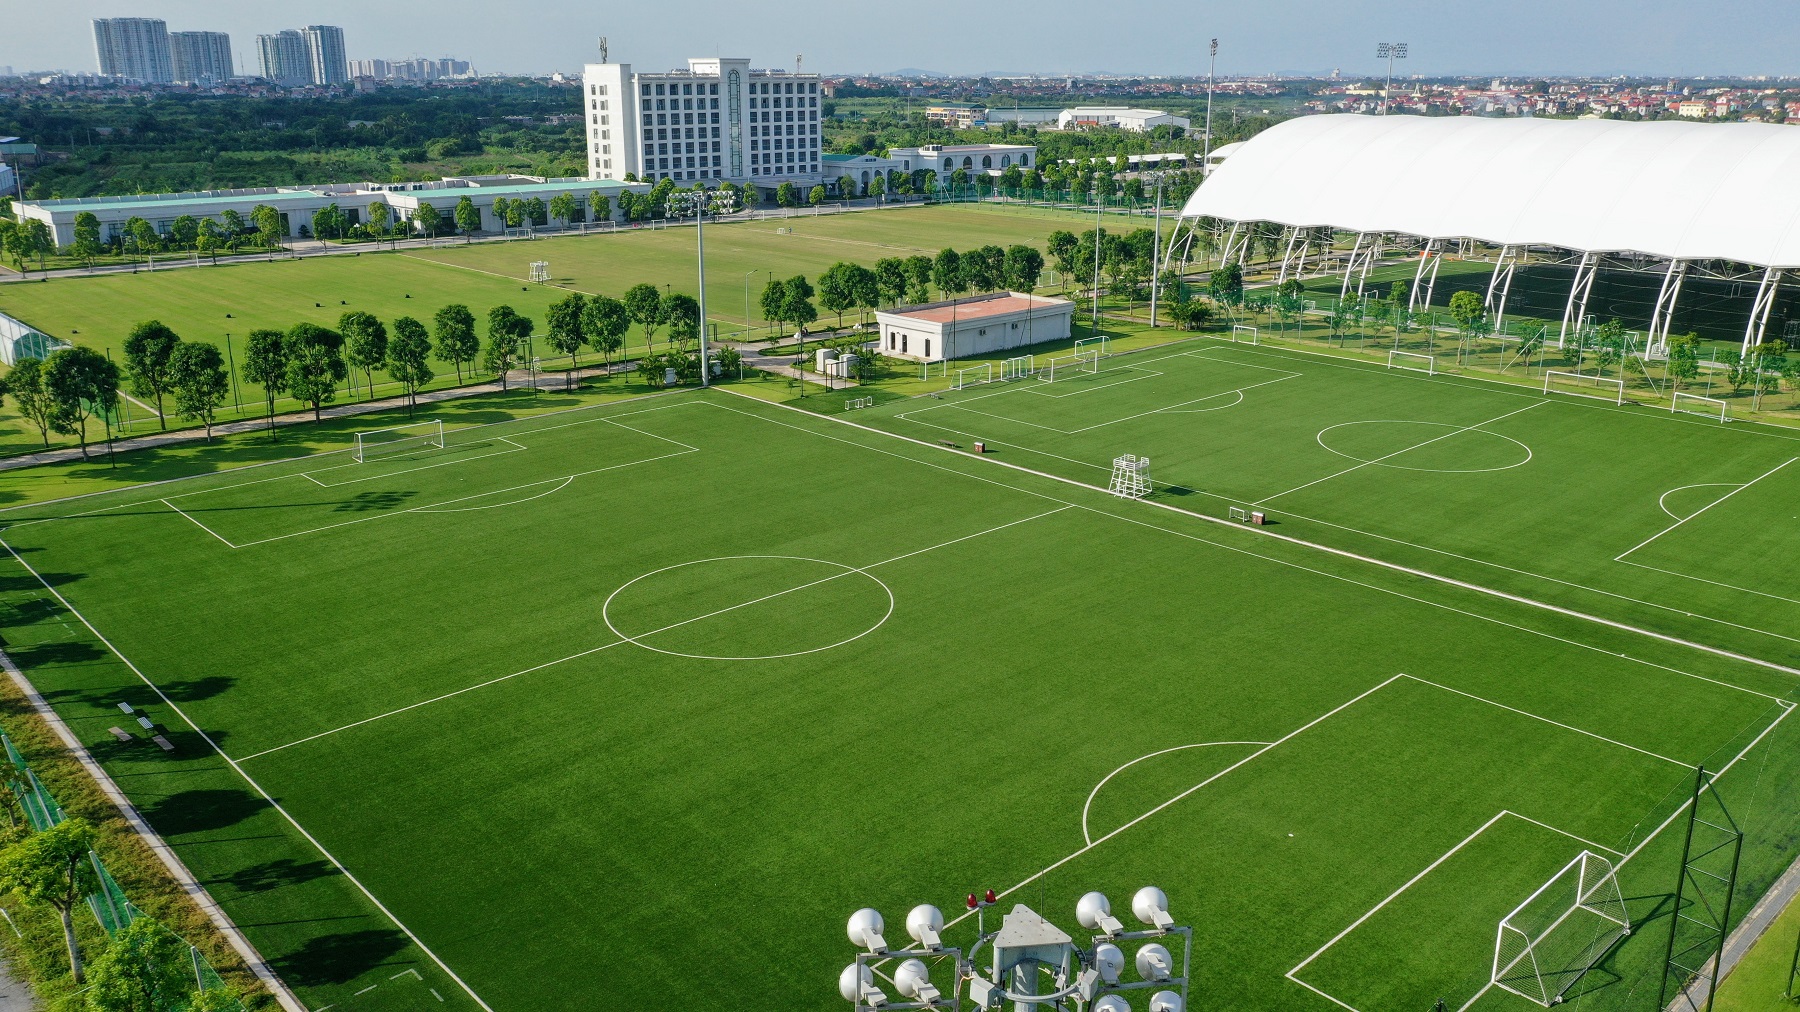 PVF sơ hữu cơ sở vật chất hiện đại cùng bộ máy chuyên môn, vận hành được Liên đoàn Bóng đá châu Á AFC công nhận là một trong ba học viện đầu tiên đạt chứng nhận học viện bóng đá 3 sao